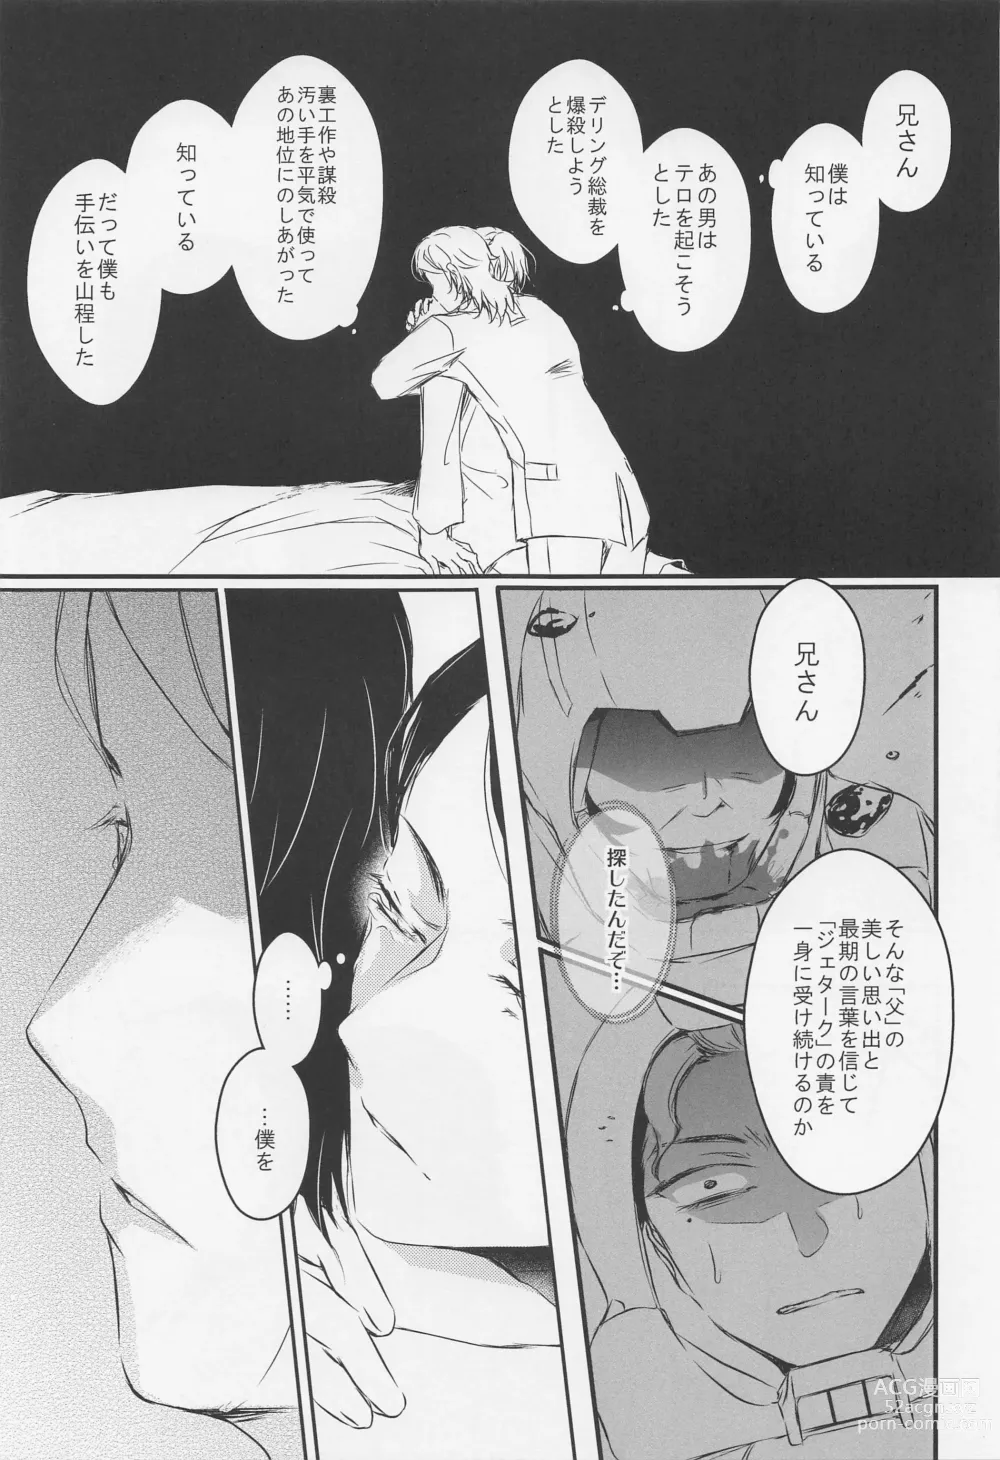 Page 52 of doujinshi Ai o Shiranai Kodomo-tachi  - Loveless Children